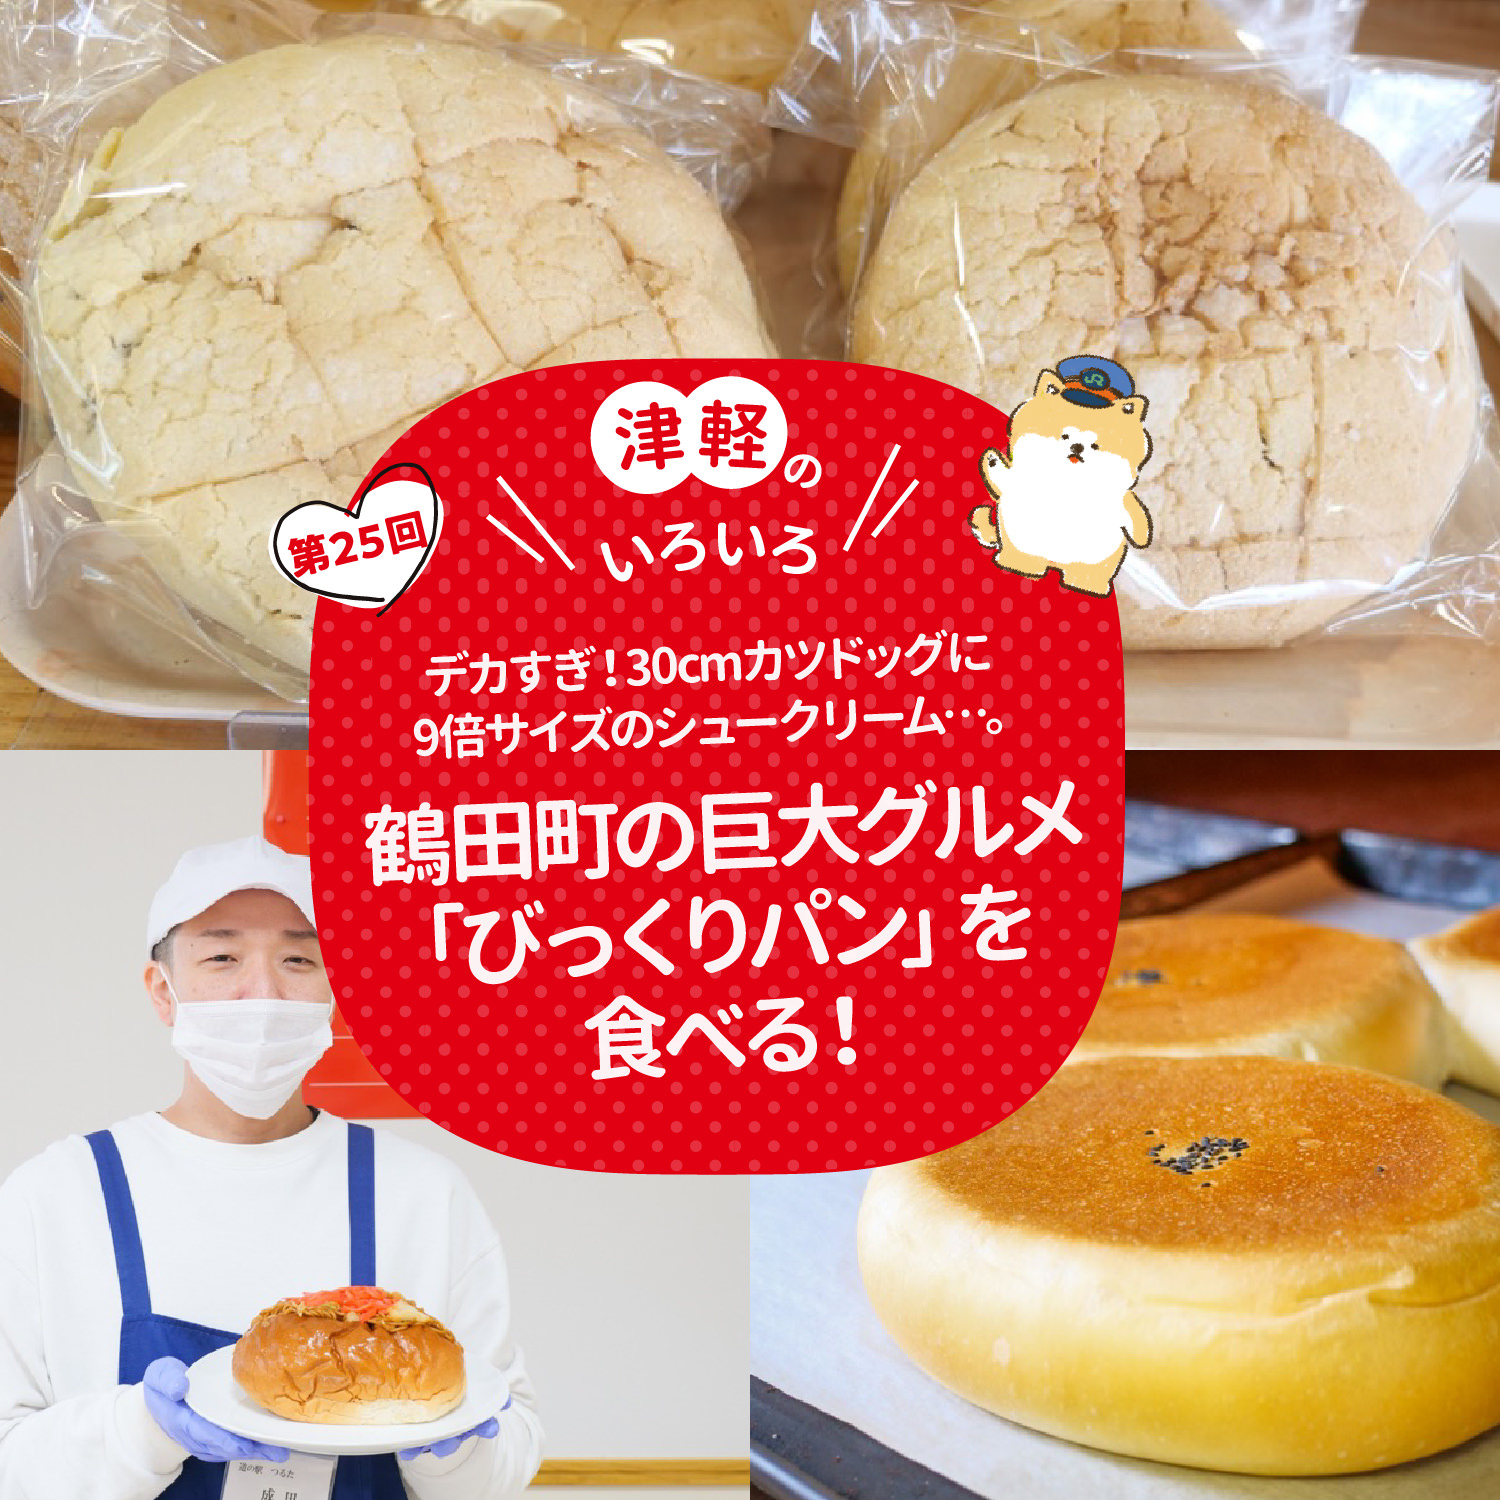 津軽のいろいろ デカすぎ！30cmカツドッグに9倍サイズのシュークリーム…。鶴田町の巨大グルメ「びっくりパン」を食べる！